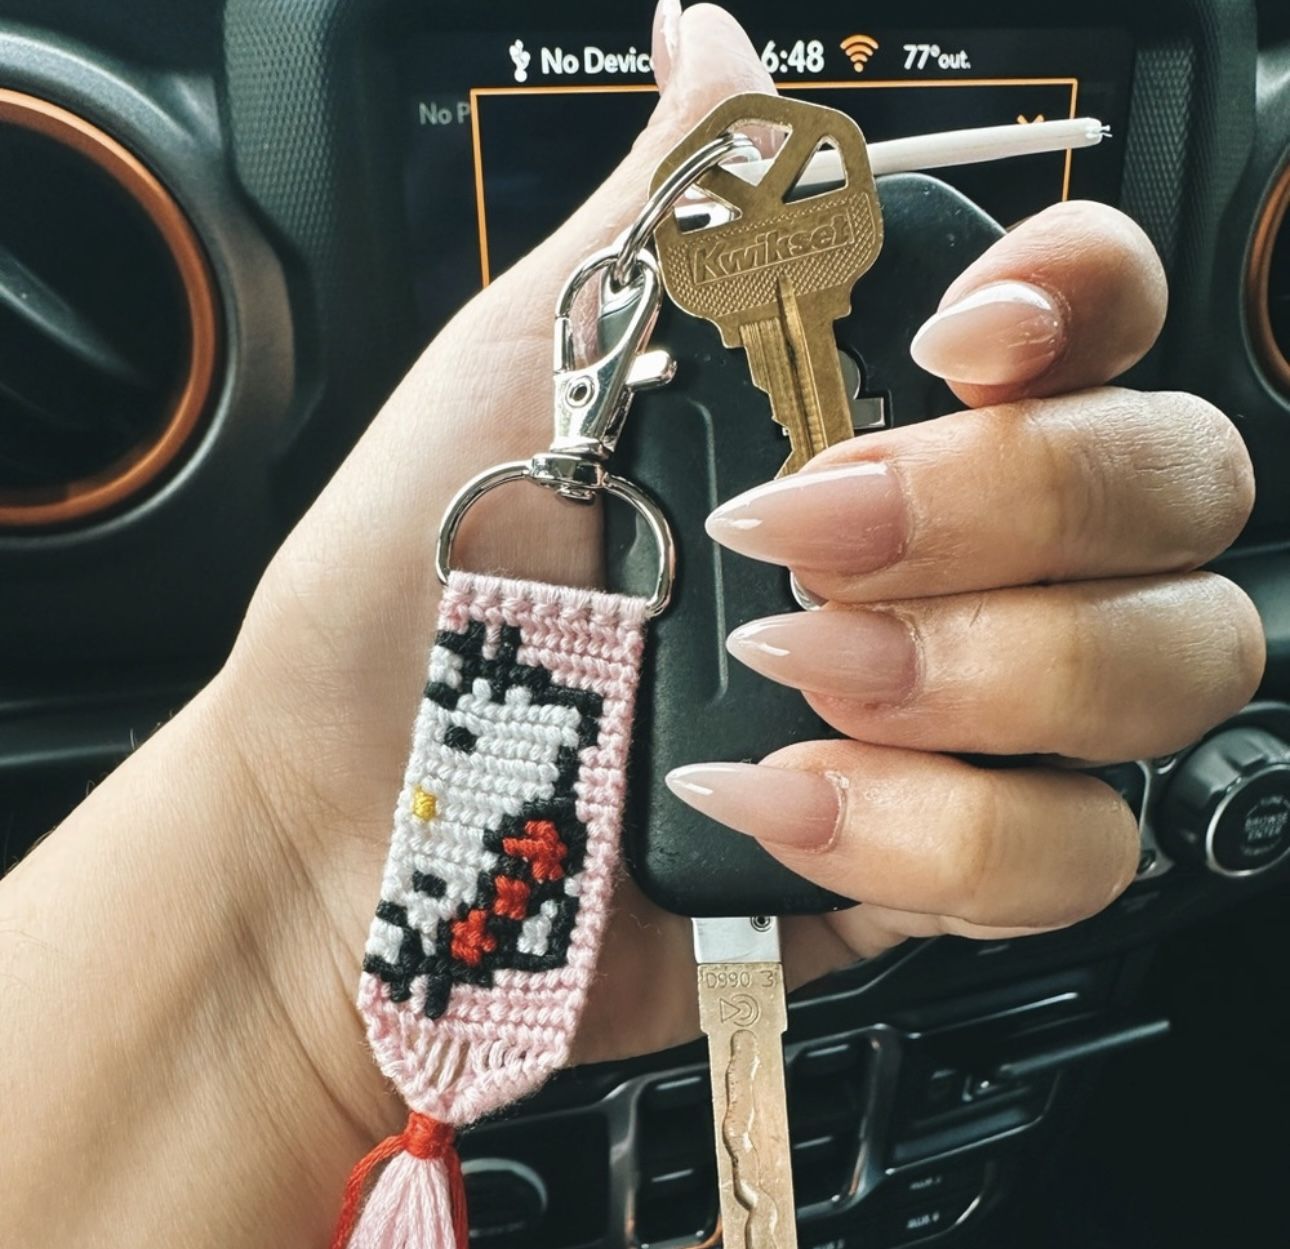 Hello Kitty Keychain 